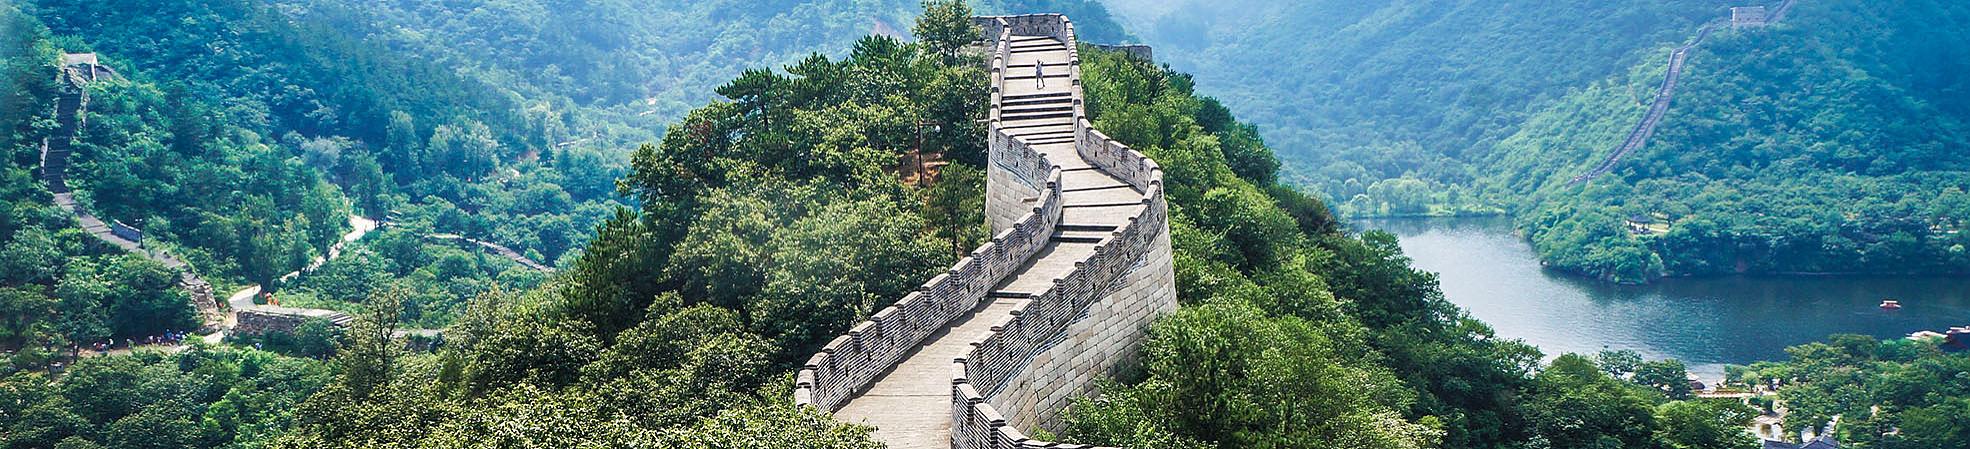 Le meilleur moment pour visiter la Grande Muraille à Beijing, en Chine